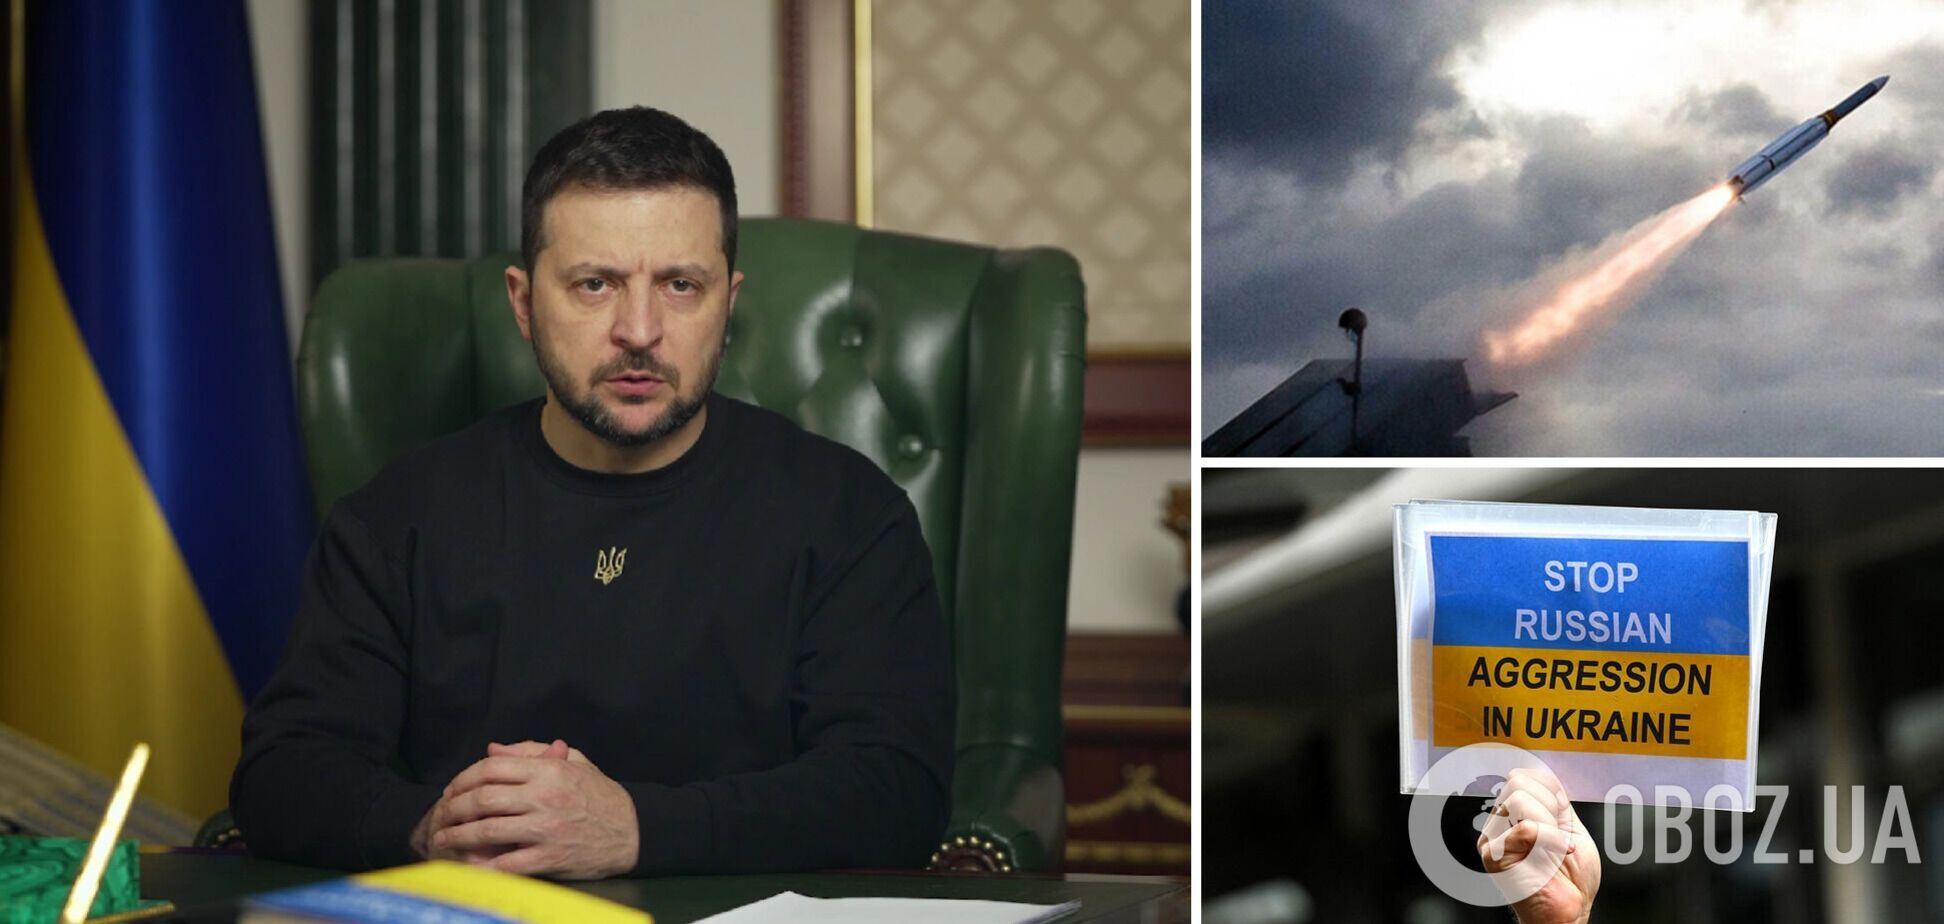 'Это история противодействия тиранам': Зеленский выступил с речью о духе свободы, которым Украина объединила мир. Видео